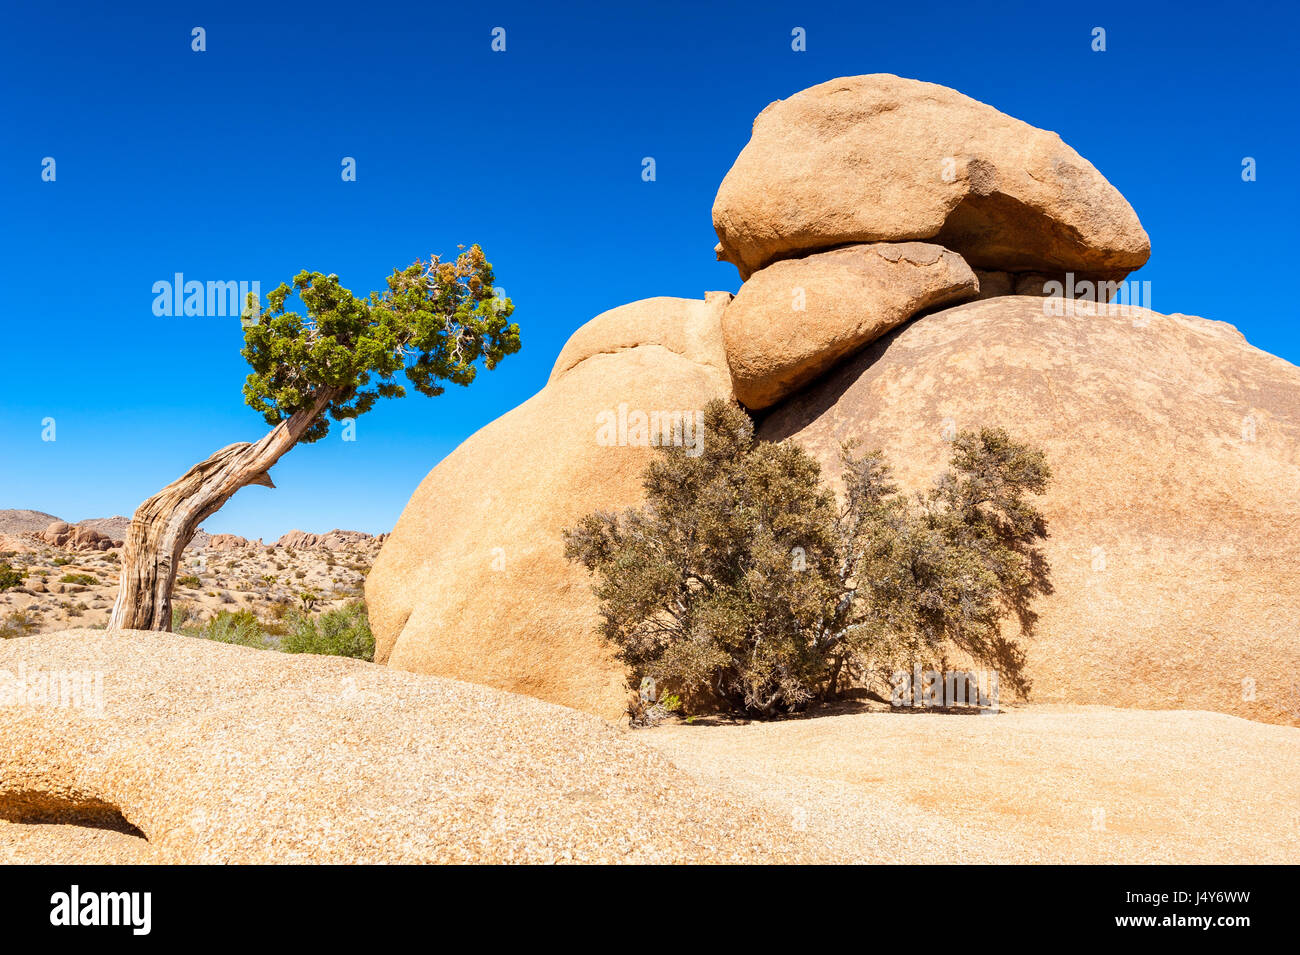 Albero di ginepro e di forma strana Rock a Joshua Tree National Park, California, Stati Uniti d'America Foto Stock